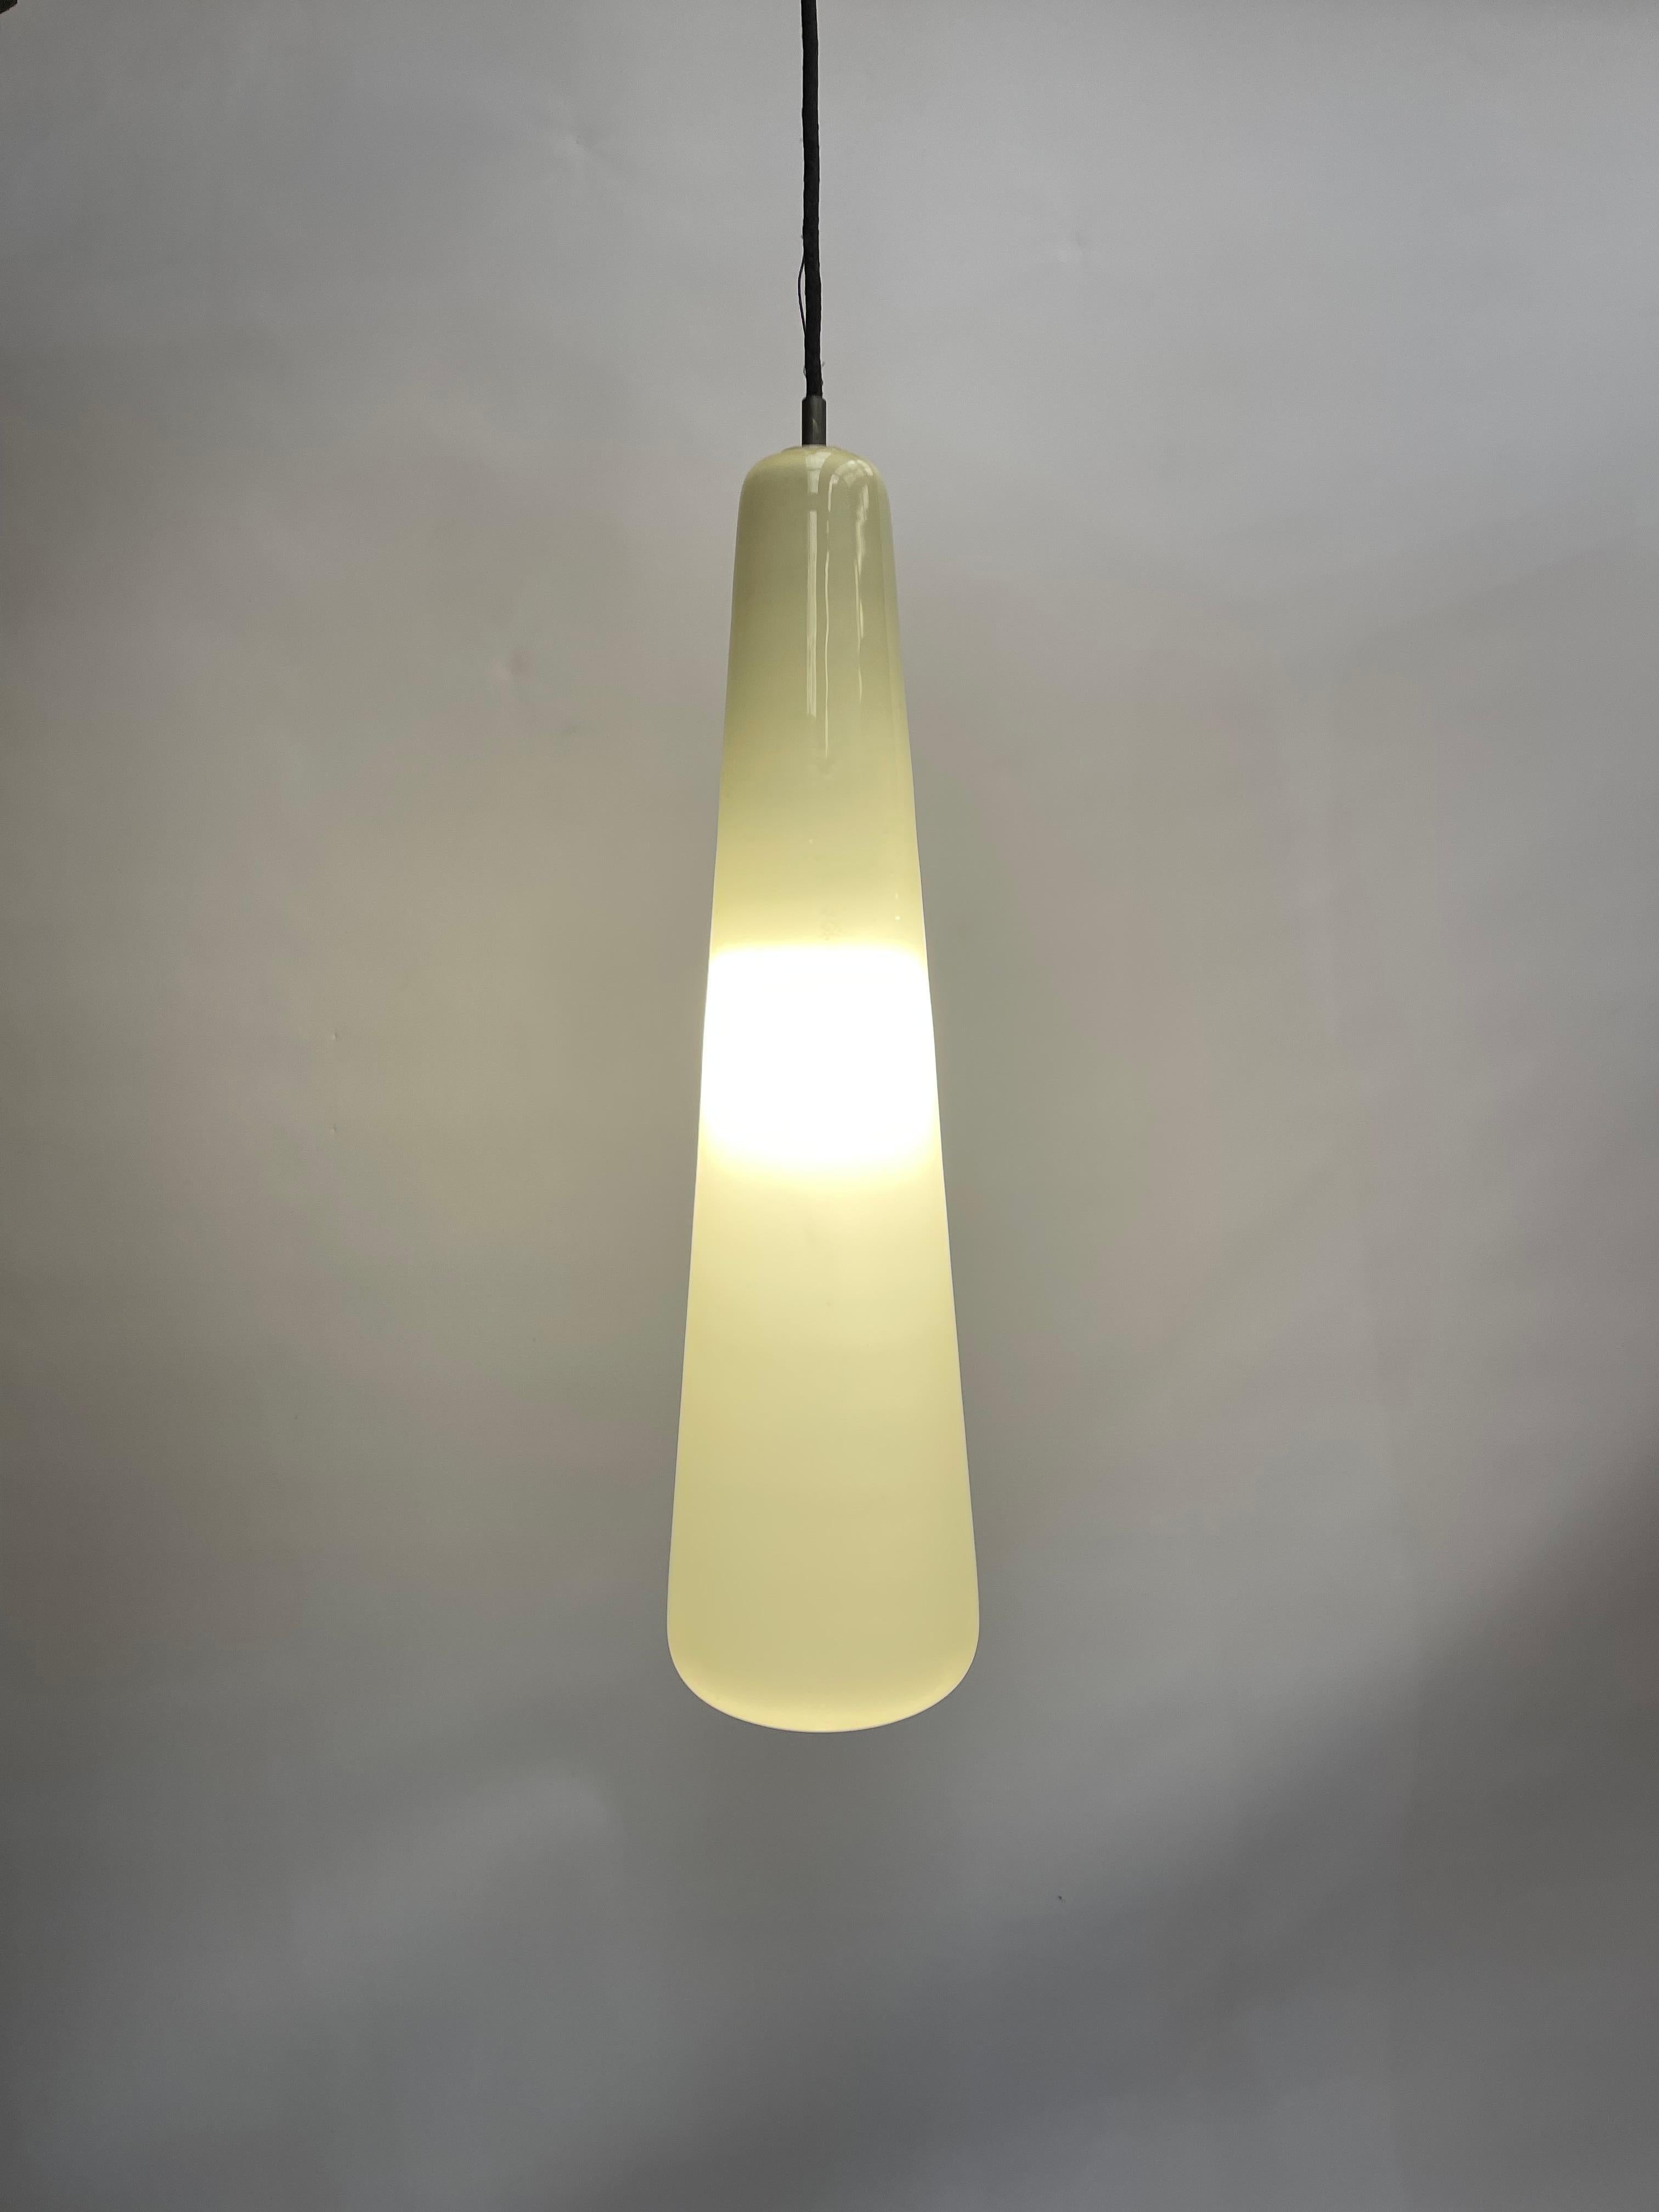 Suédois 60s 70s Teak Ceiling Lamp Pendant Light Uno & Östen Kristiansson Luxus